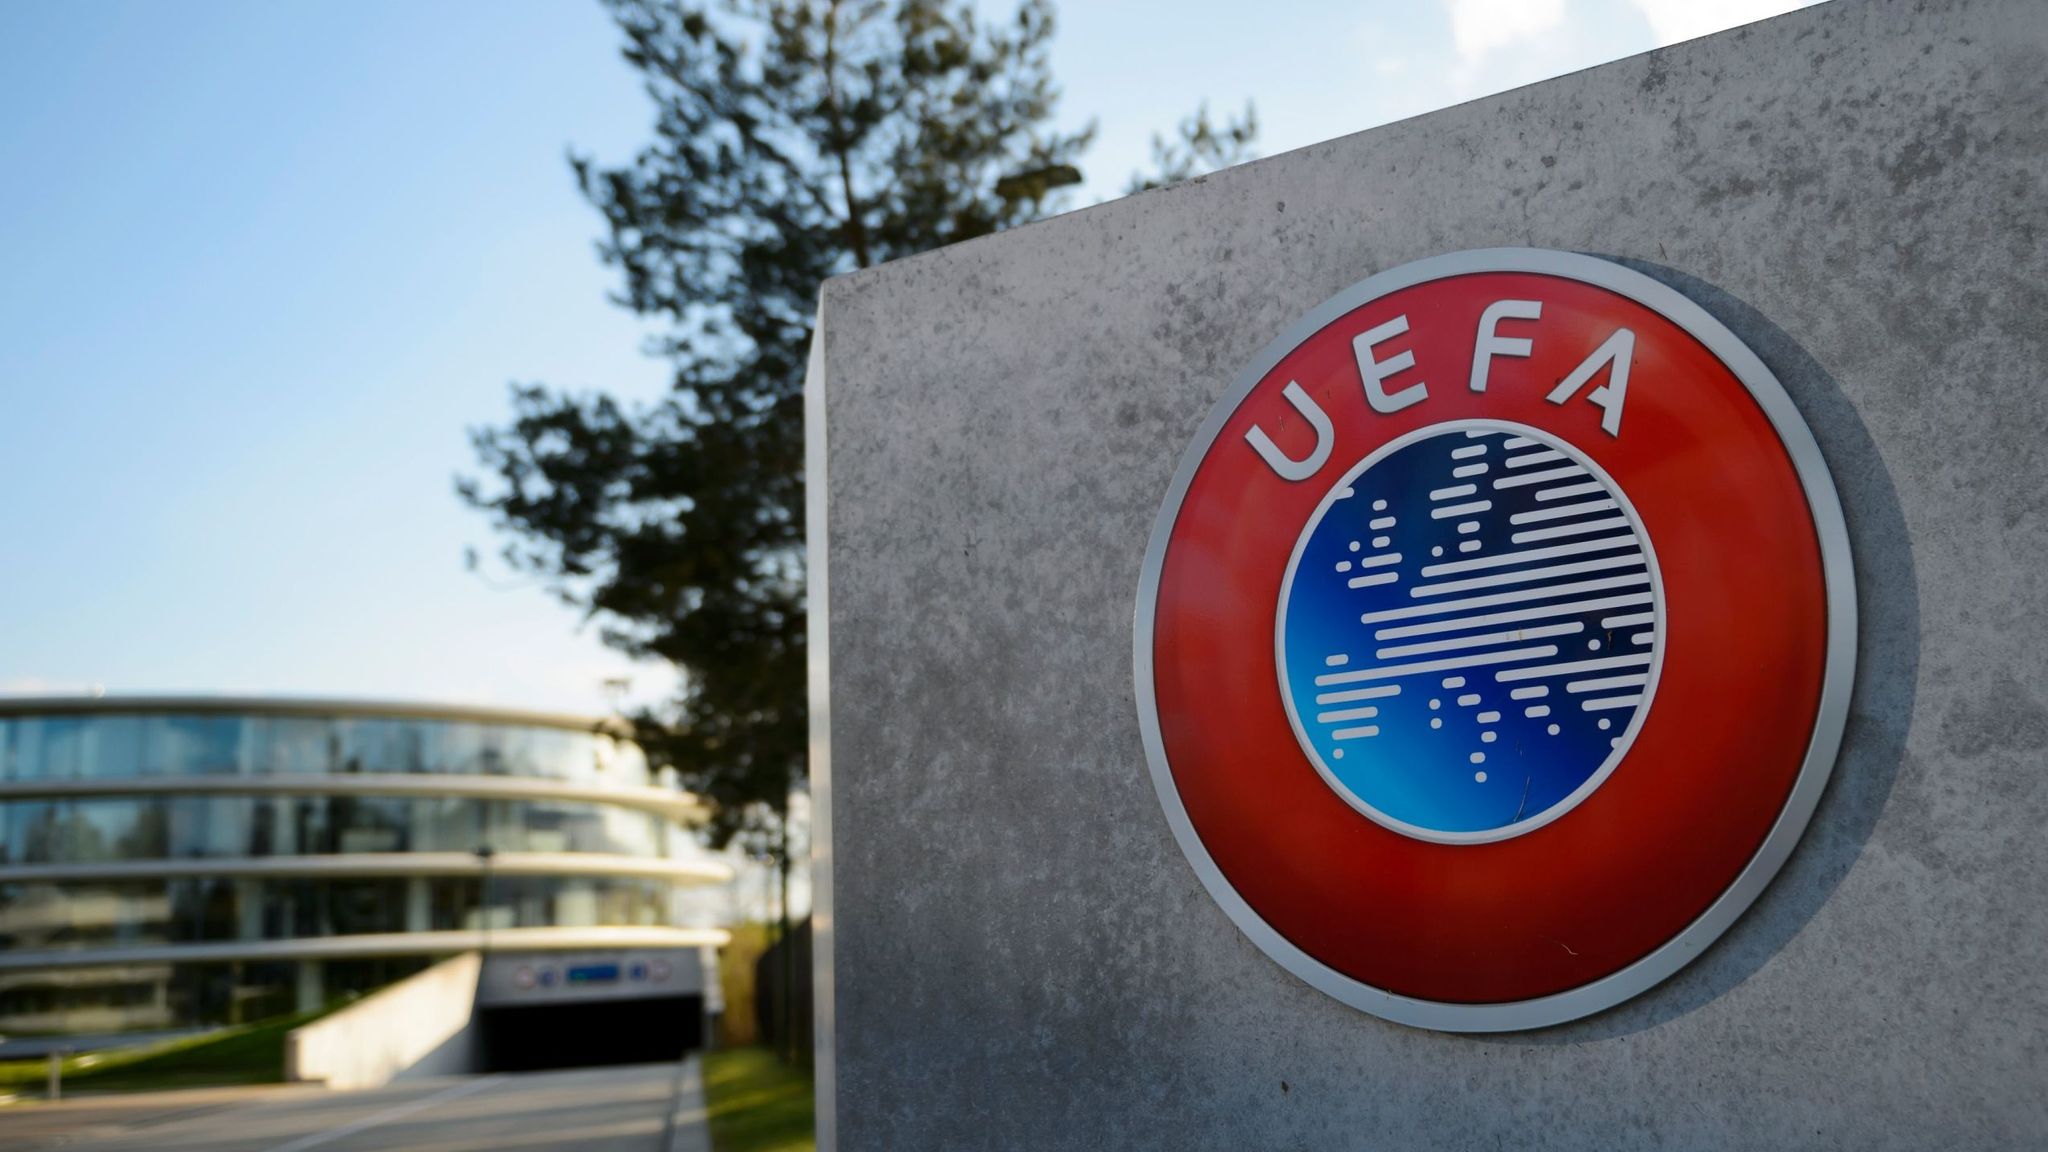 Η UEFA απαγόρευσε την εμφάνιση συμβόλων της κοινότητας ΛΟΑΤΚΙ